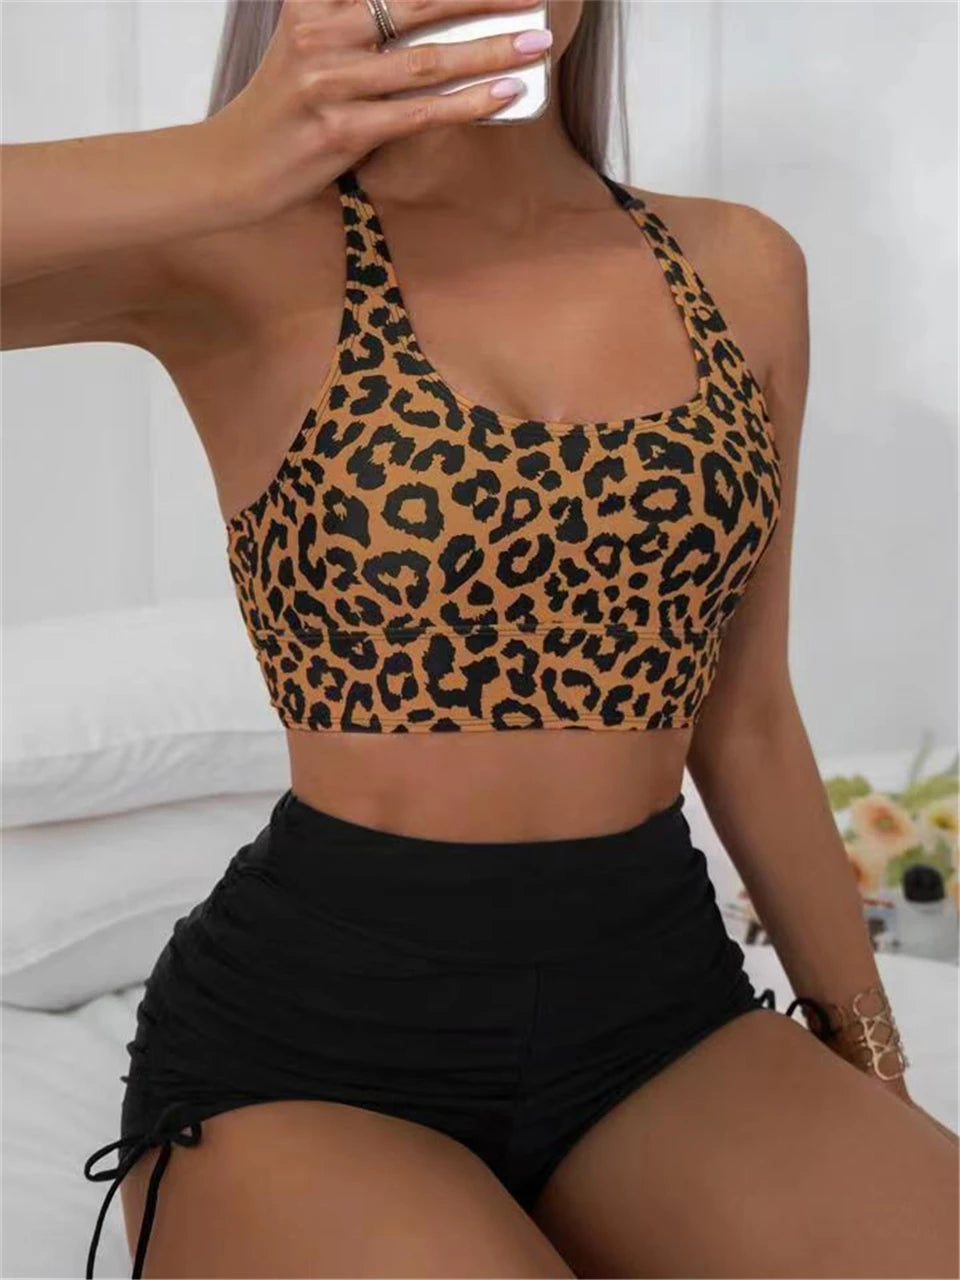 Leopard Print High Waist Swimsuit - Sexy Hollow Out Swimwear for Women's Summer Beachwear.